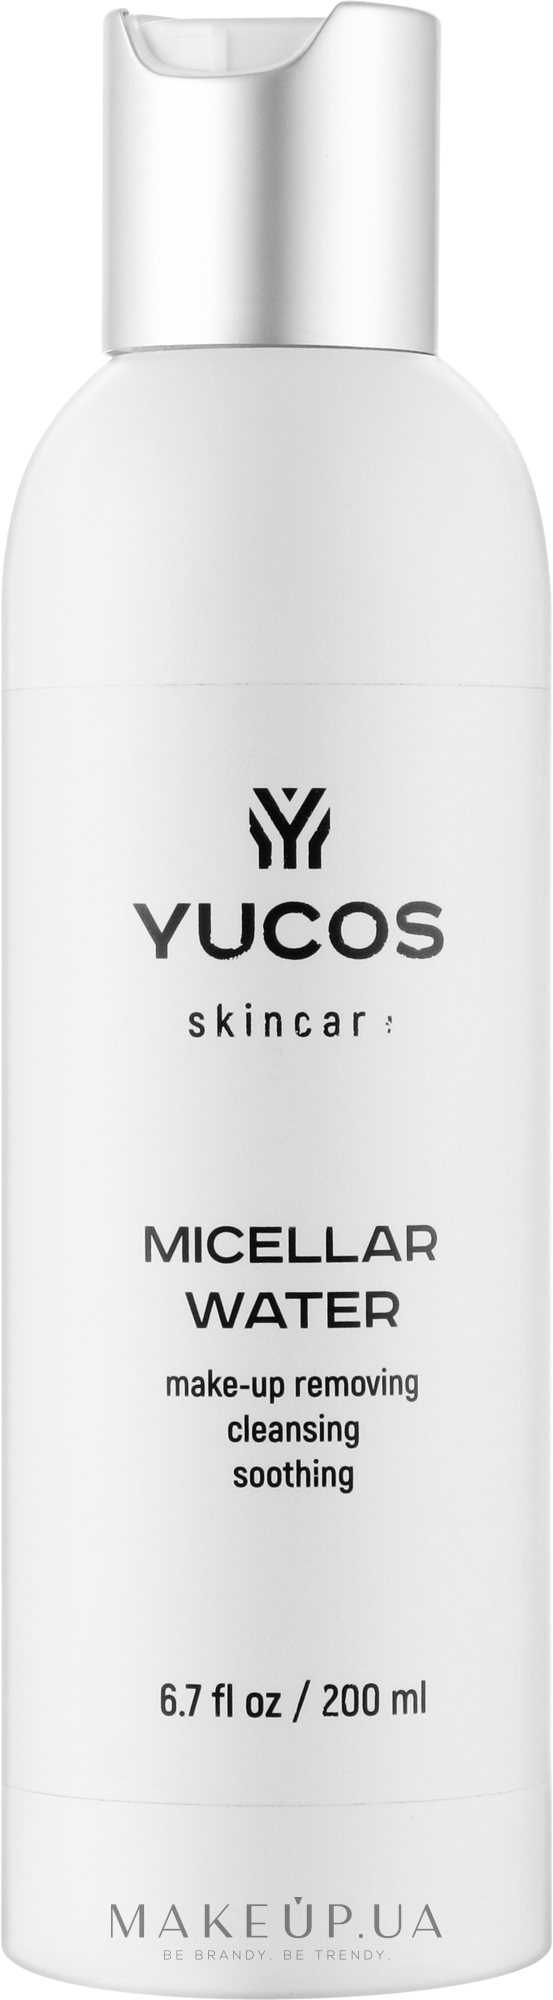 Міцелярна вода для зняття макіяжу - Yucos Micellar Water Make-Up Removing Cleansing Soothing — фото 200ml